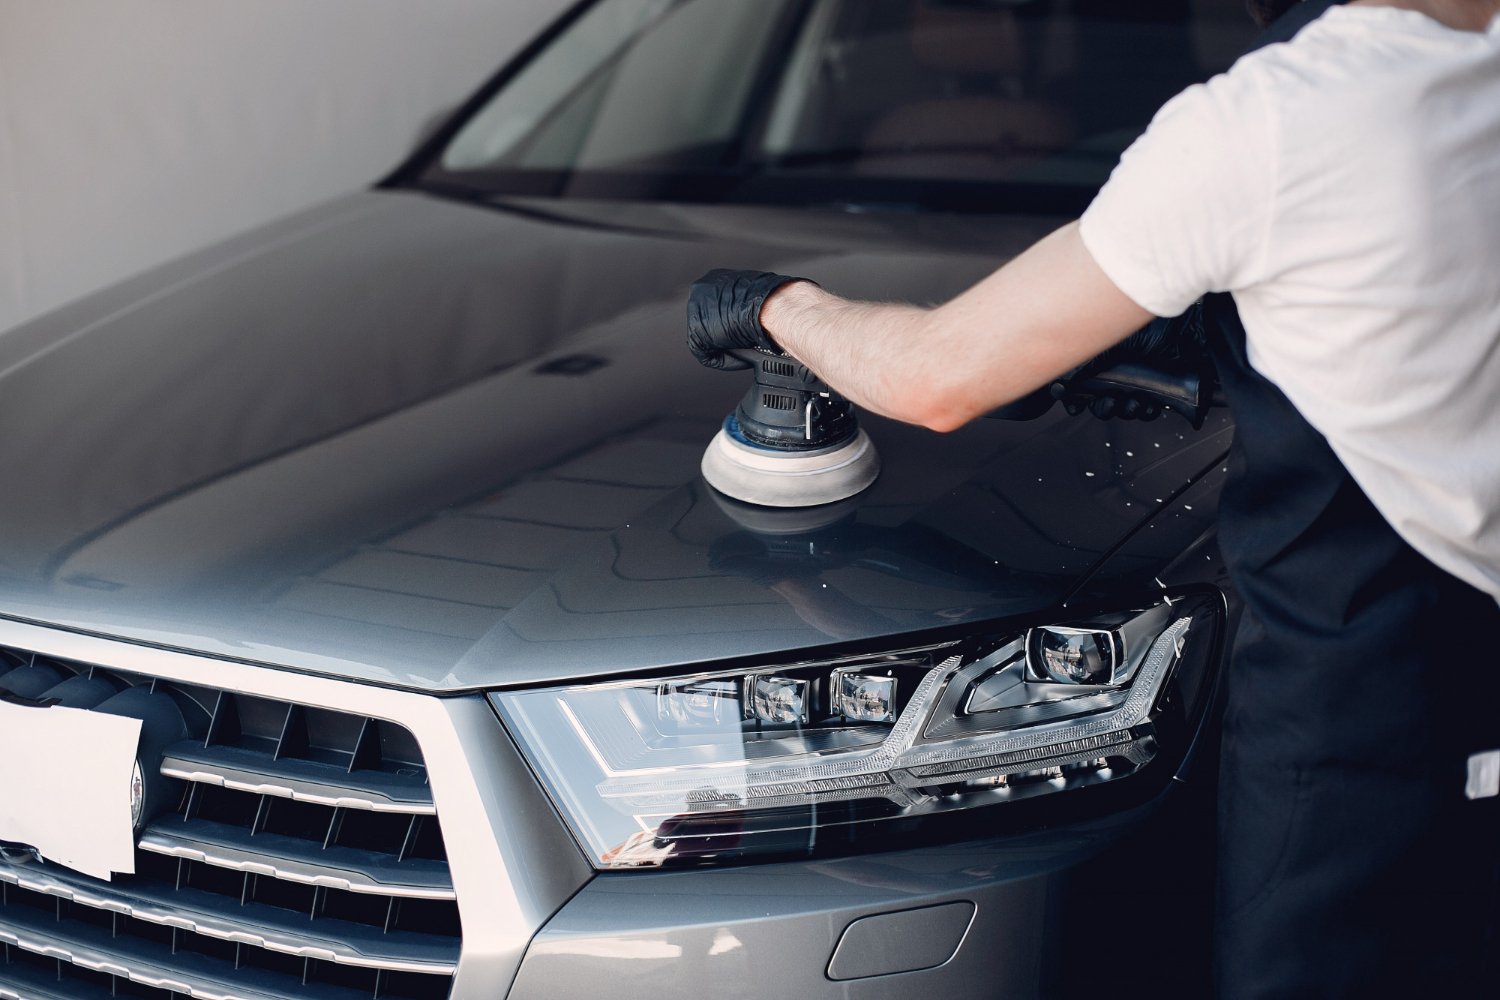 Pessoa usando blusa branco e avental preto, polindo um carro cinza com o auxílio de um dispositivo. Ilustração do texto sobre lavar o carro.